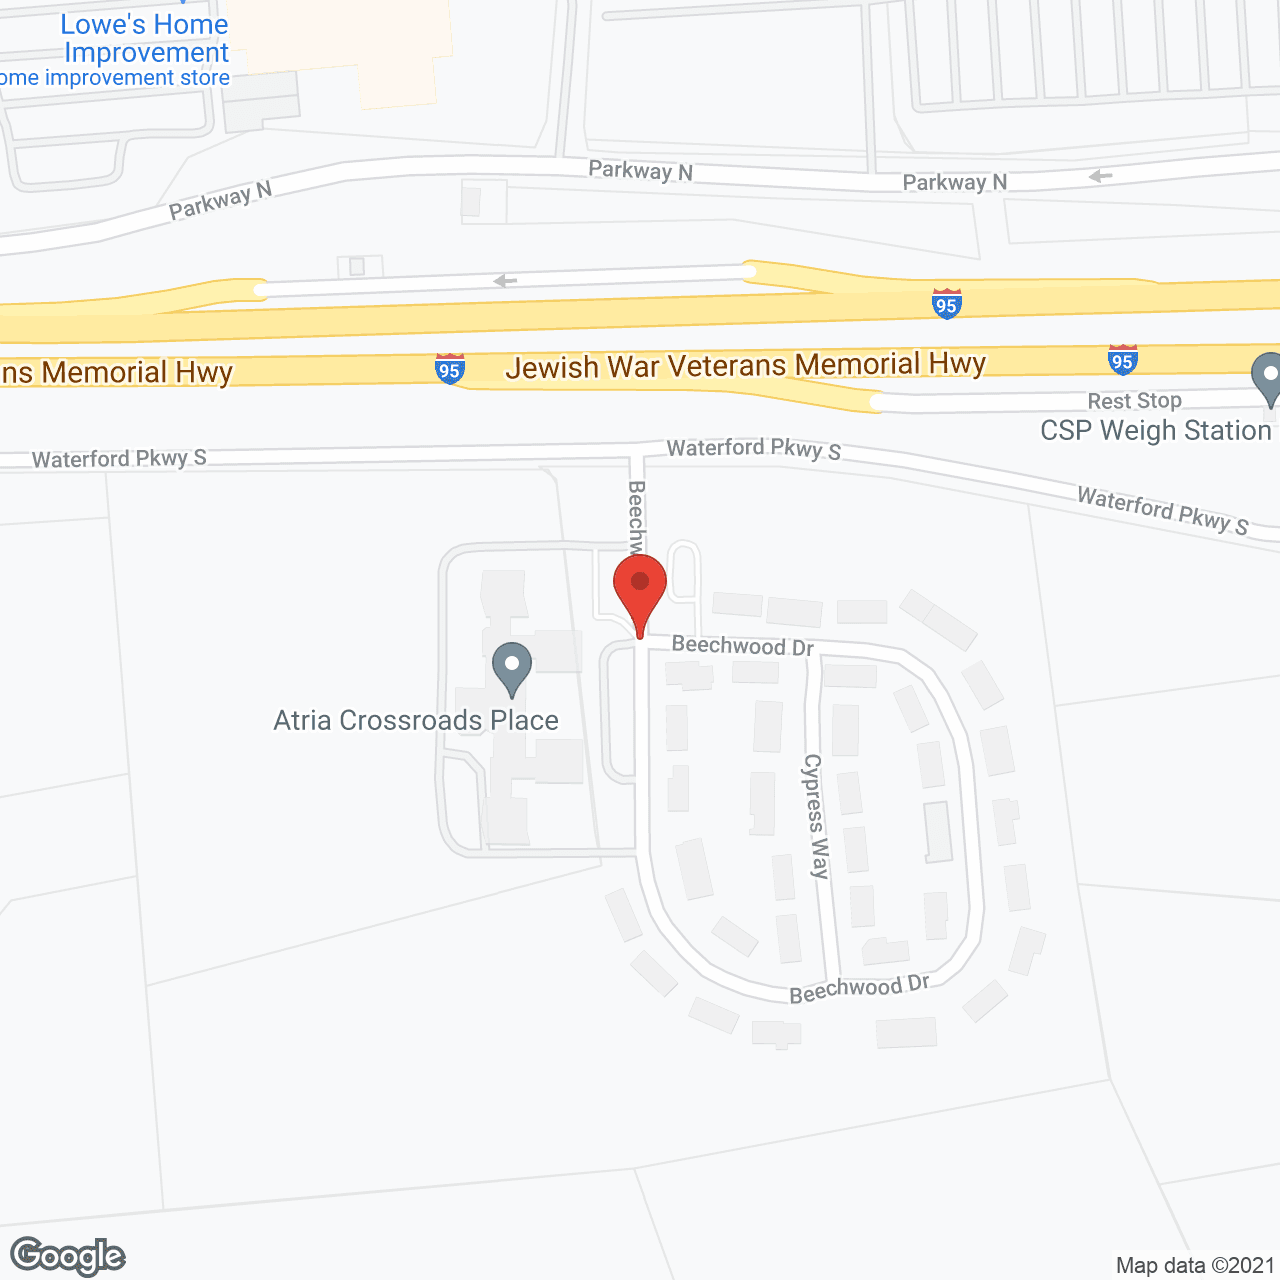 Atria Crossroads Place in google map